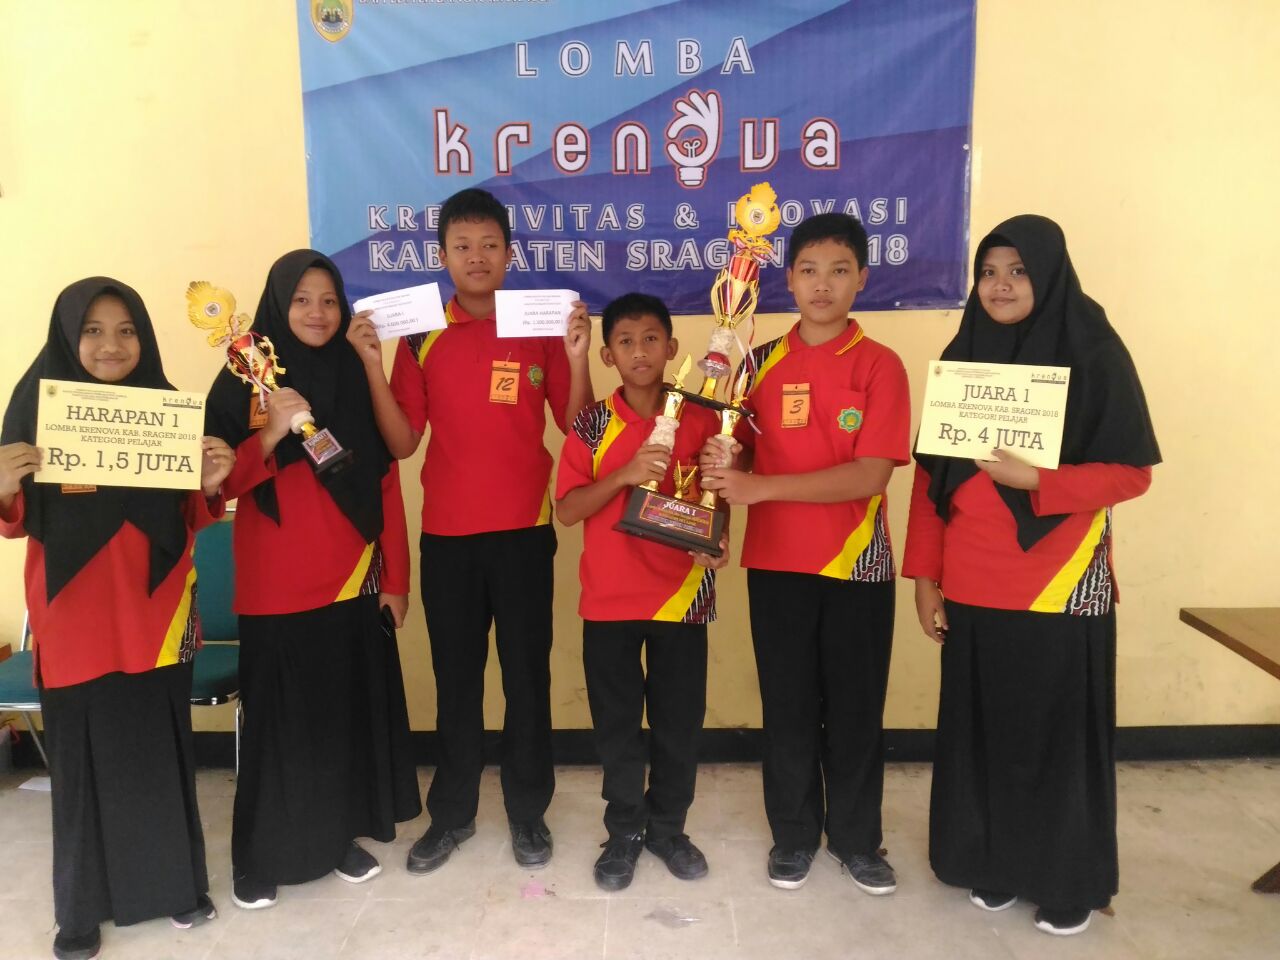 Juara 1 dan 4 pada lomba Kreatifitas dan Inovasi Kabupaten Sragen